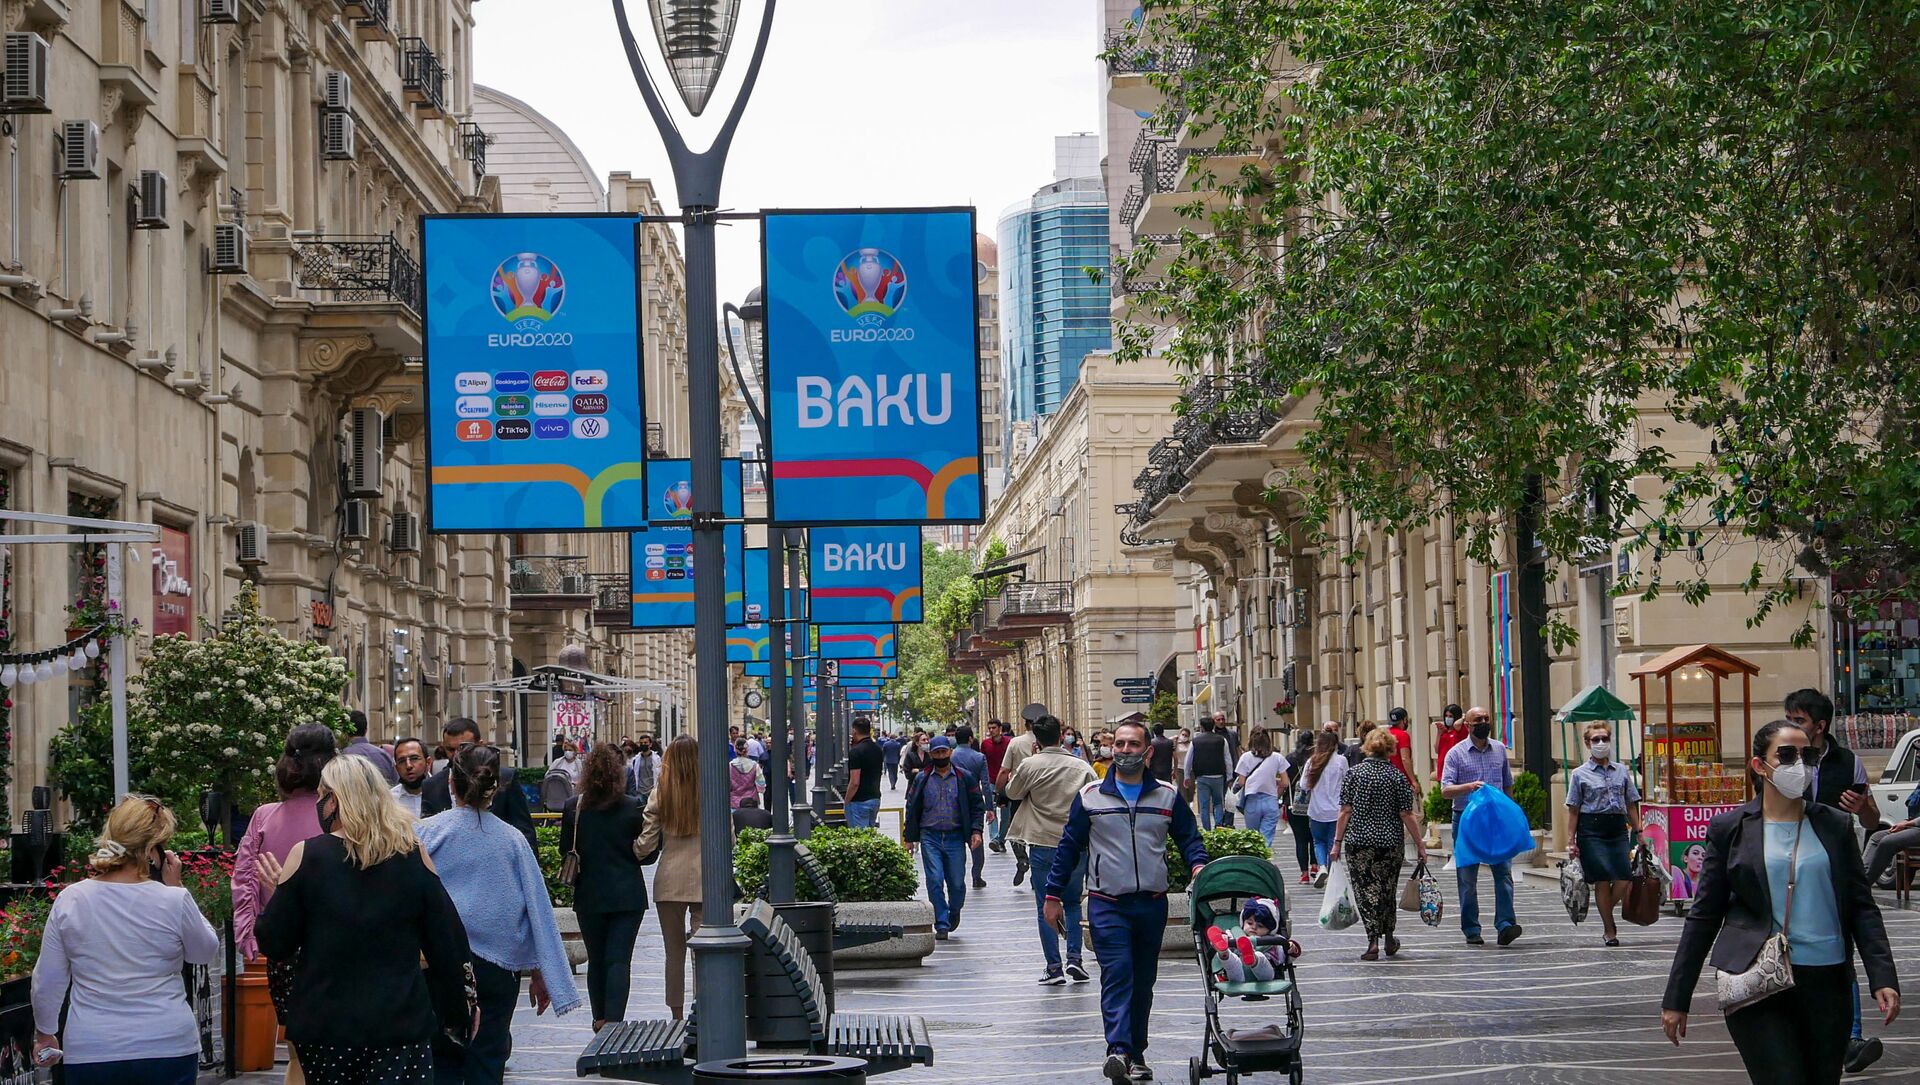 Баннеры на улице в Баку, посвященные Евро-2020 - Sputnik Азербайджан, 1920, 07.06.2021